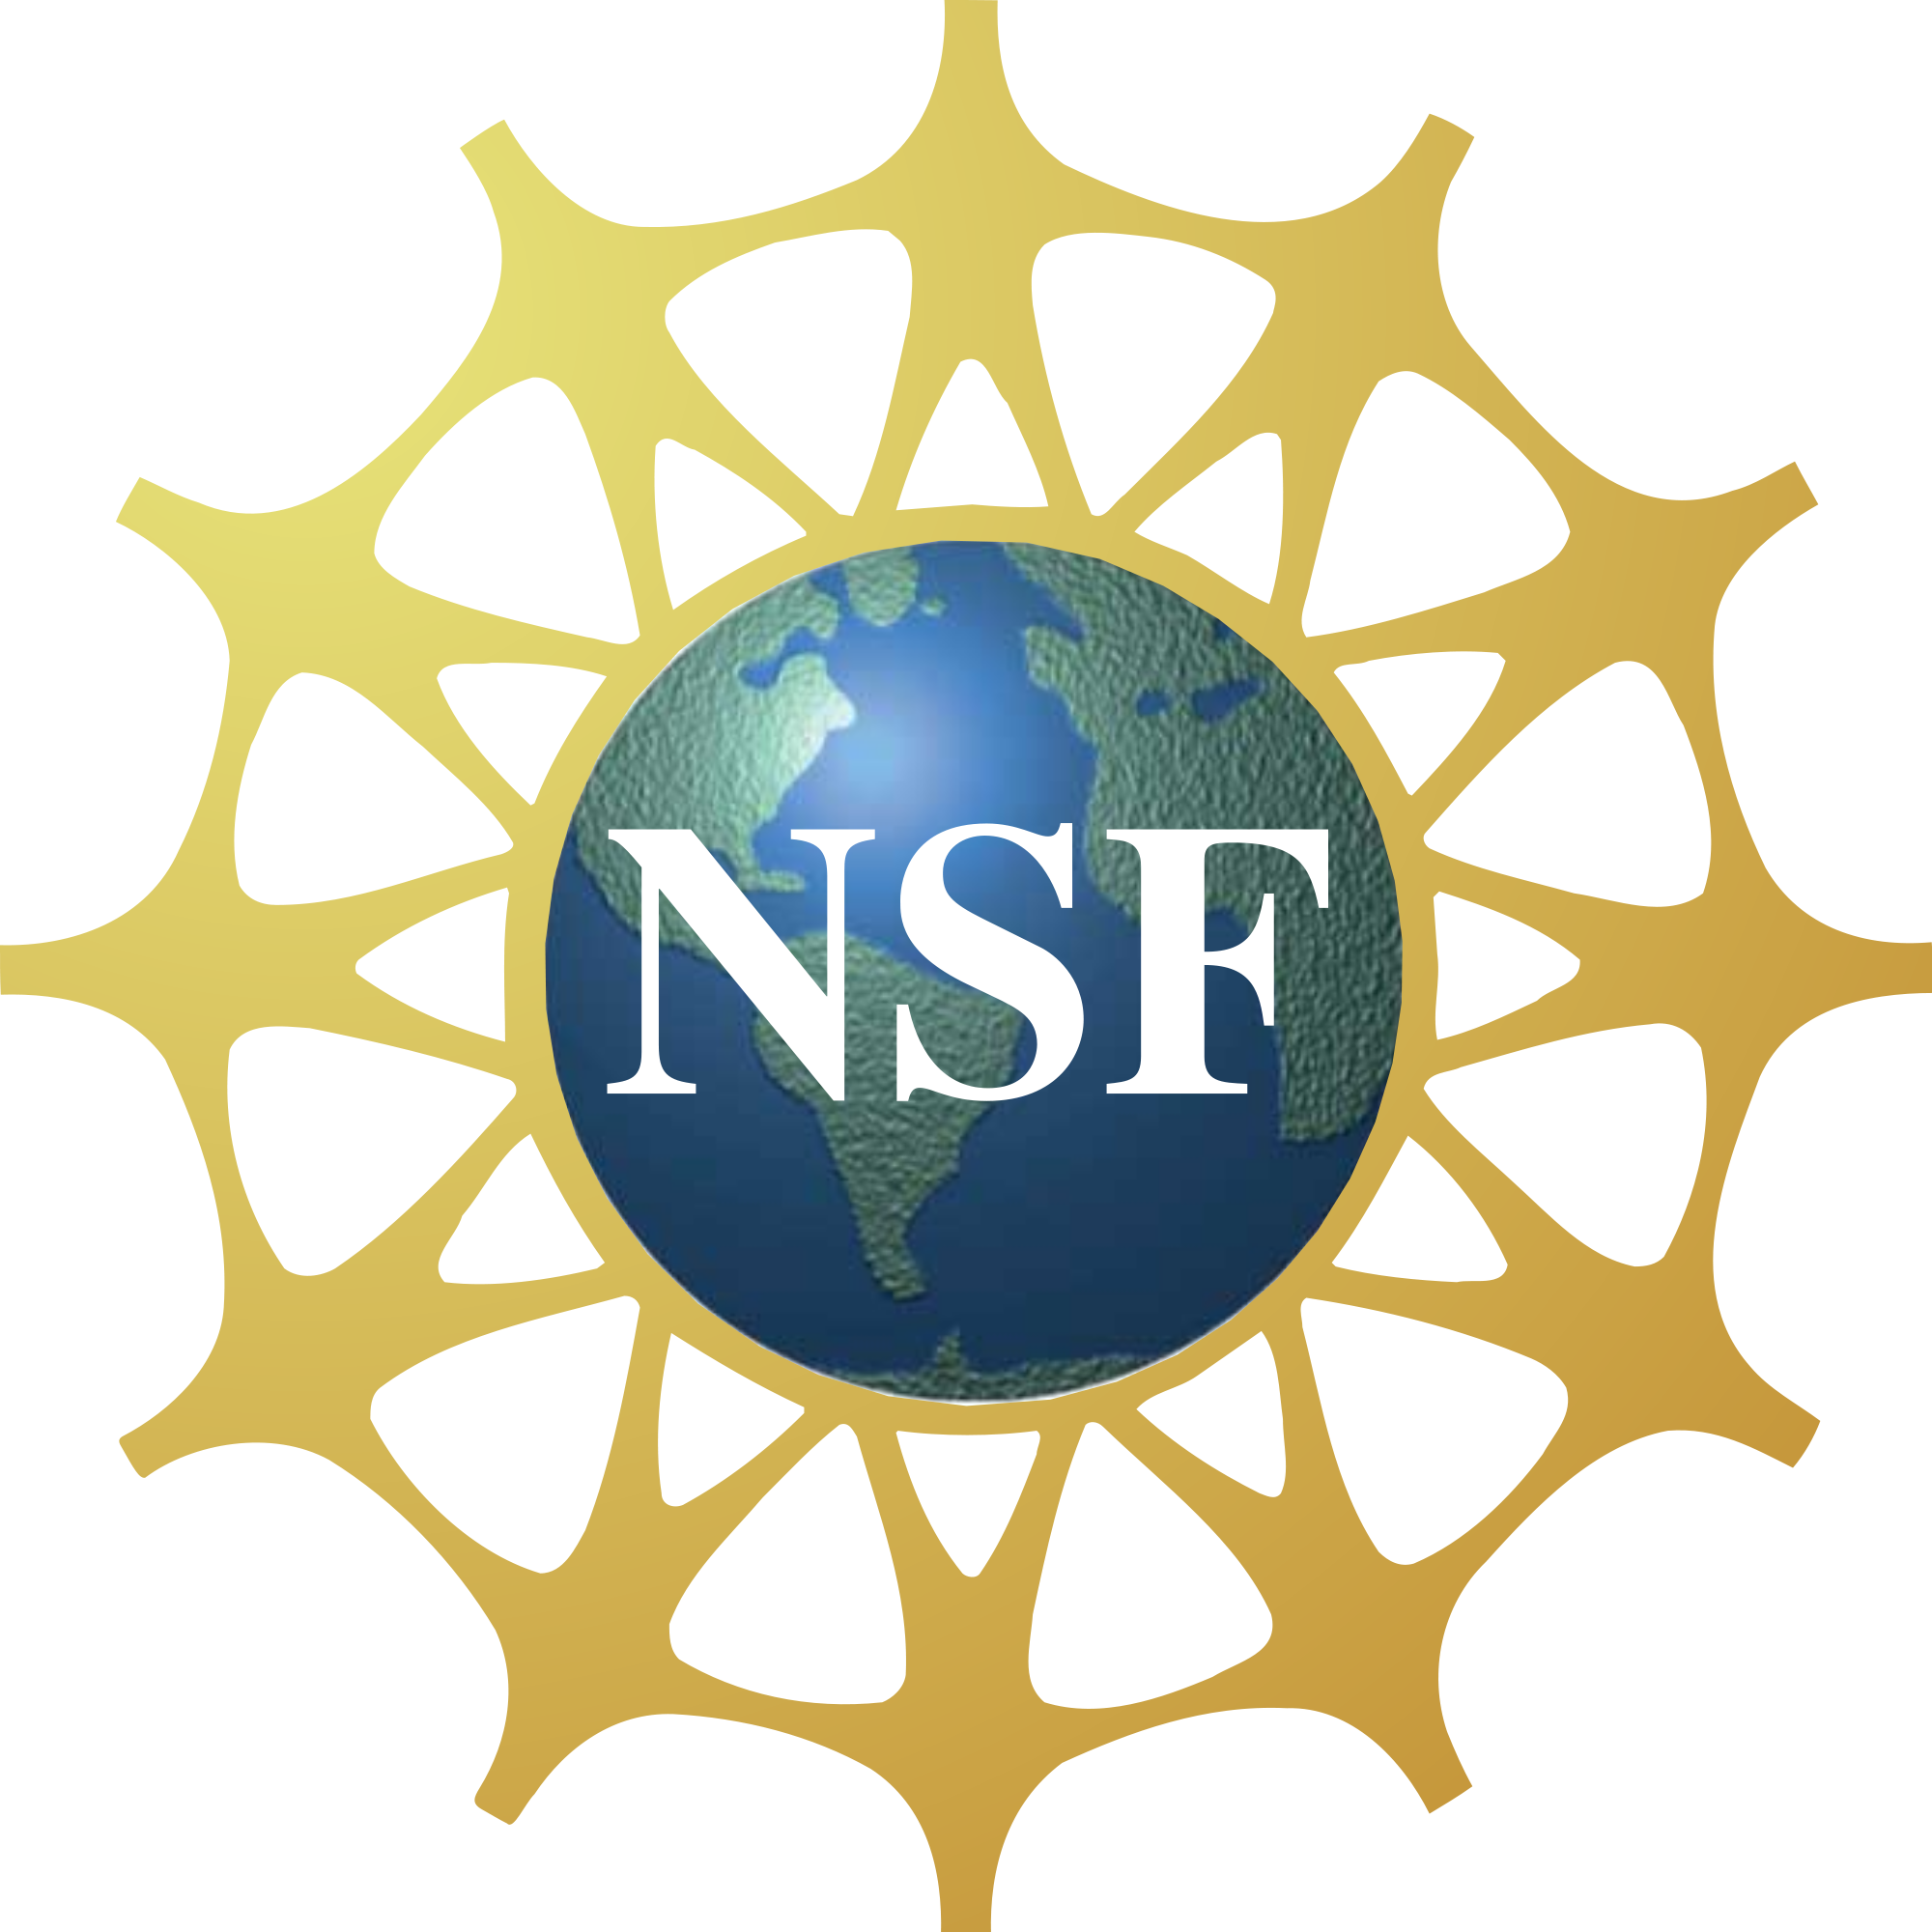 nsf funding